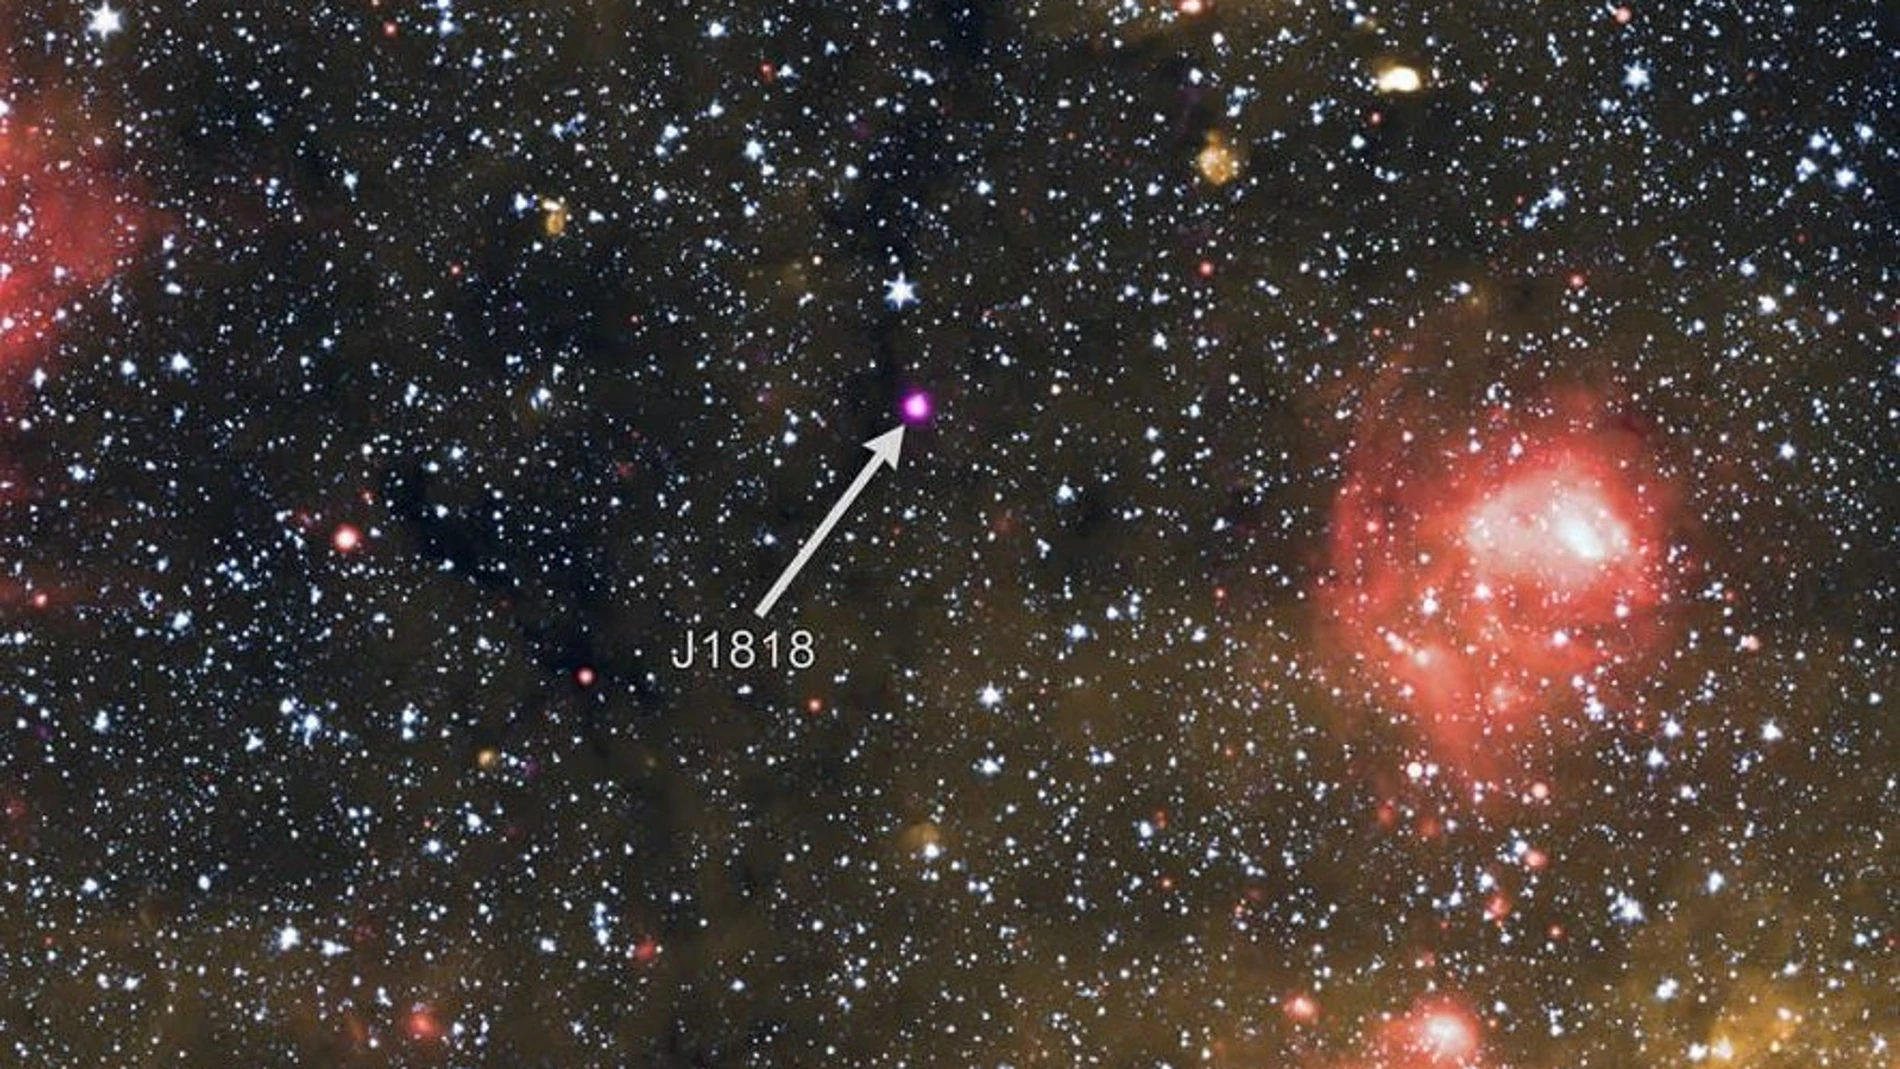 El magnetar J1818 podría ser tan rara avis como a simple vista parece